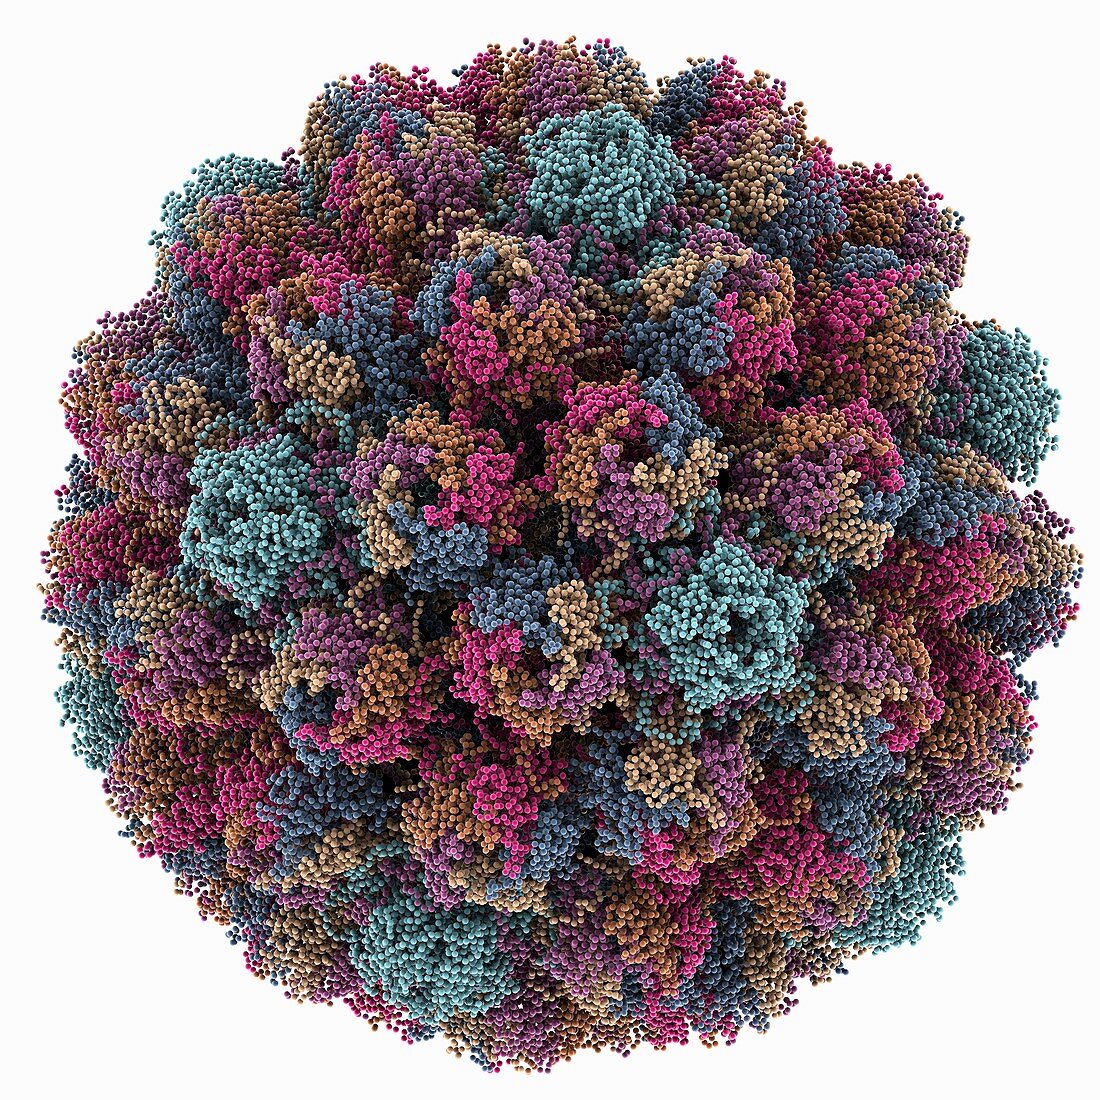 Avian polyomavirus capsid